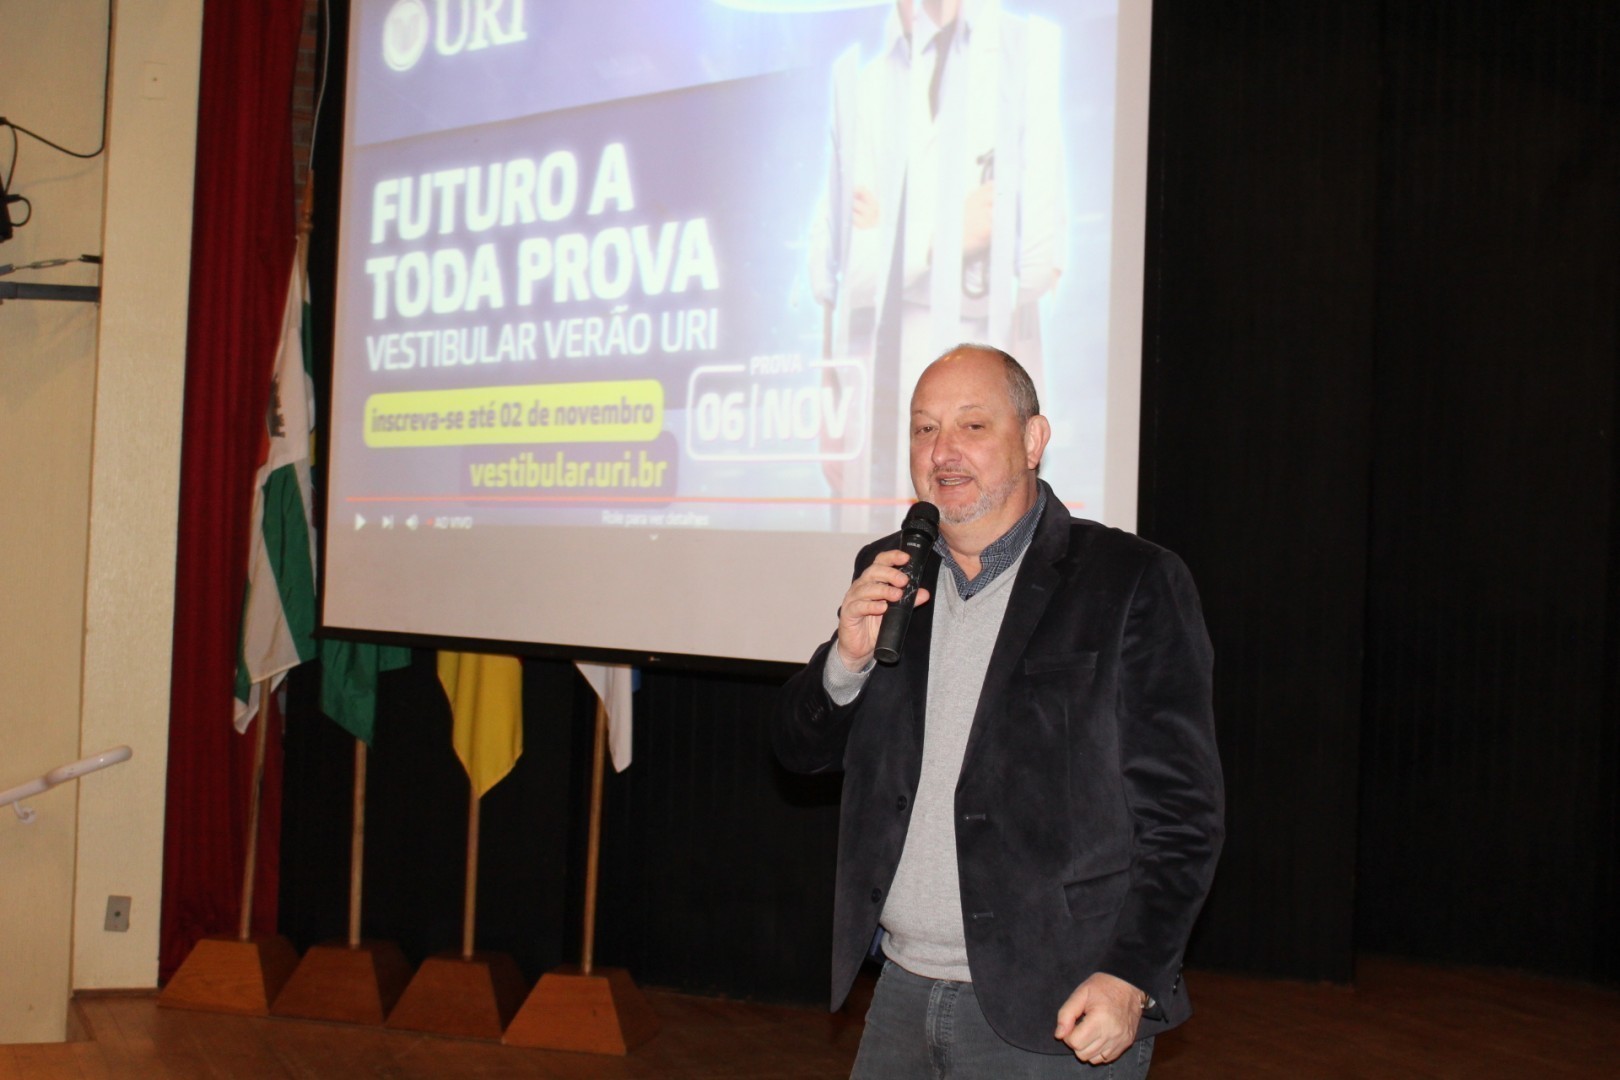 Diretor-Geral, Paulo Roberto Giollo, reforçou a importância do CrediURI no custeio da graduação desejada 